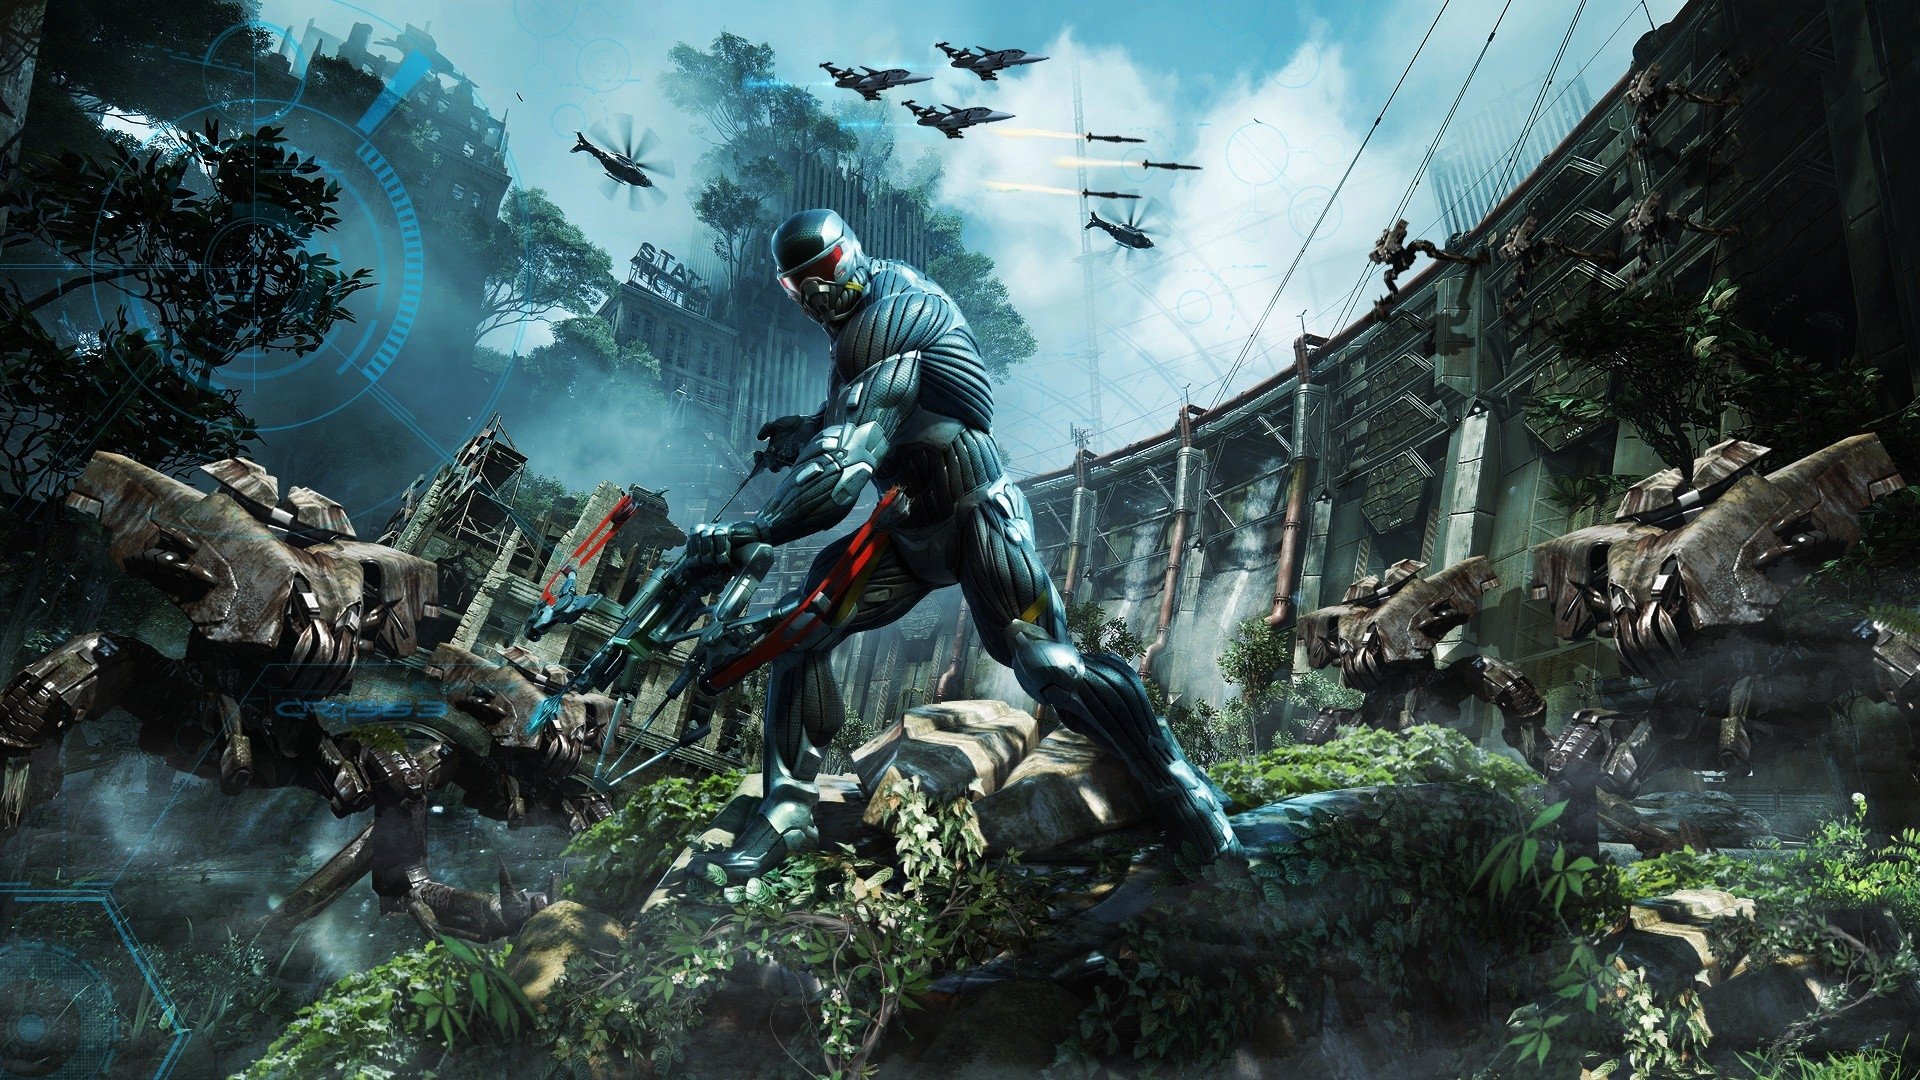 Crytek hoãn ra mắt Crysis Remastered vì fan thất vọng về đồ hoạ trong trailer